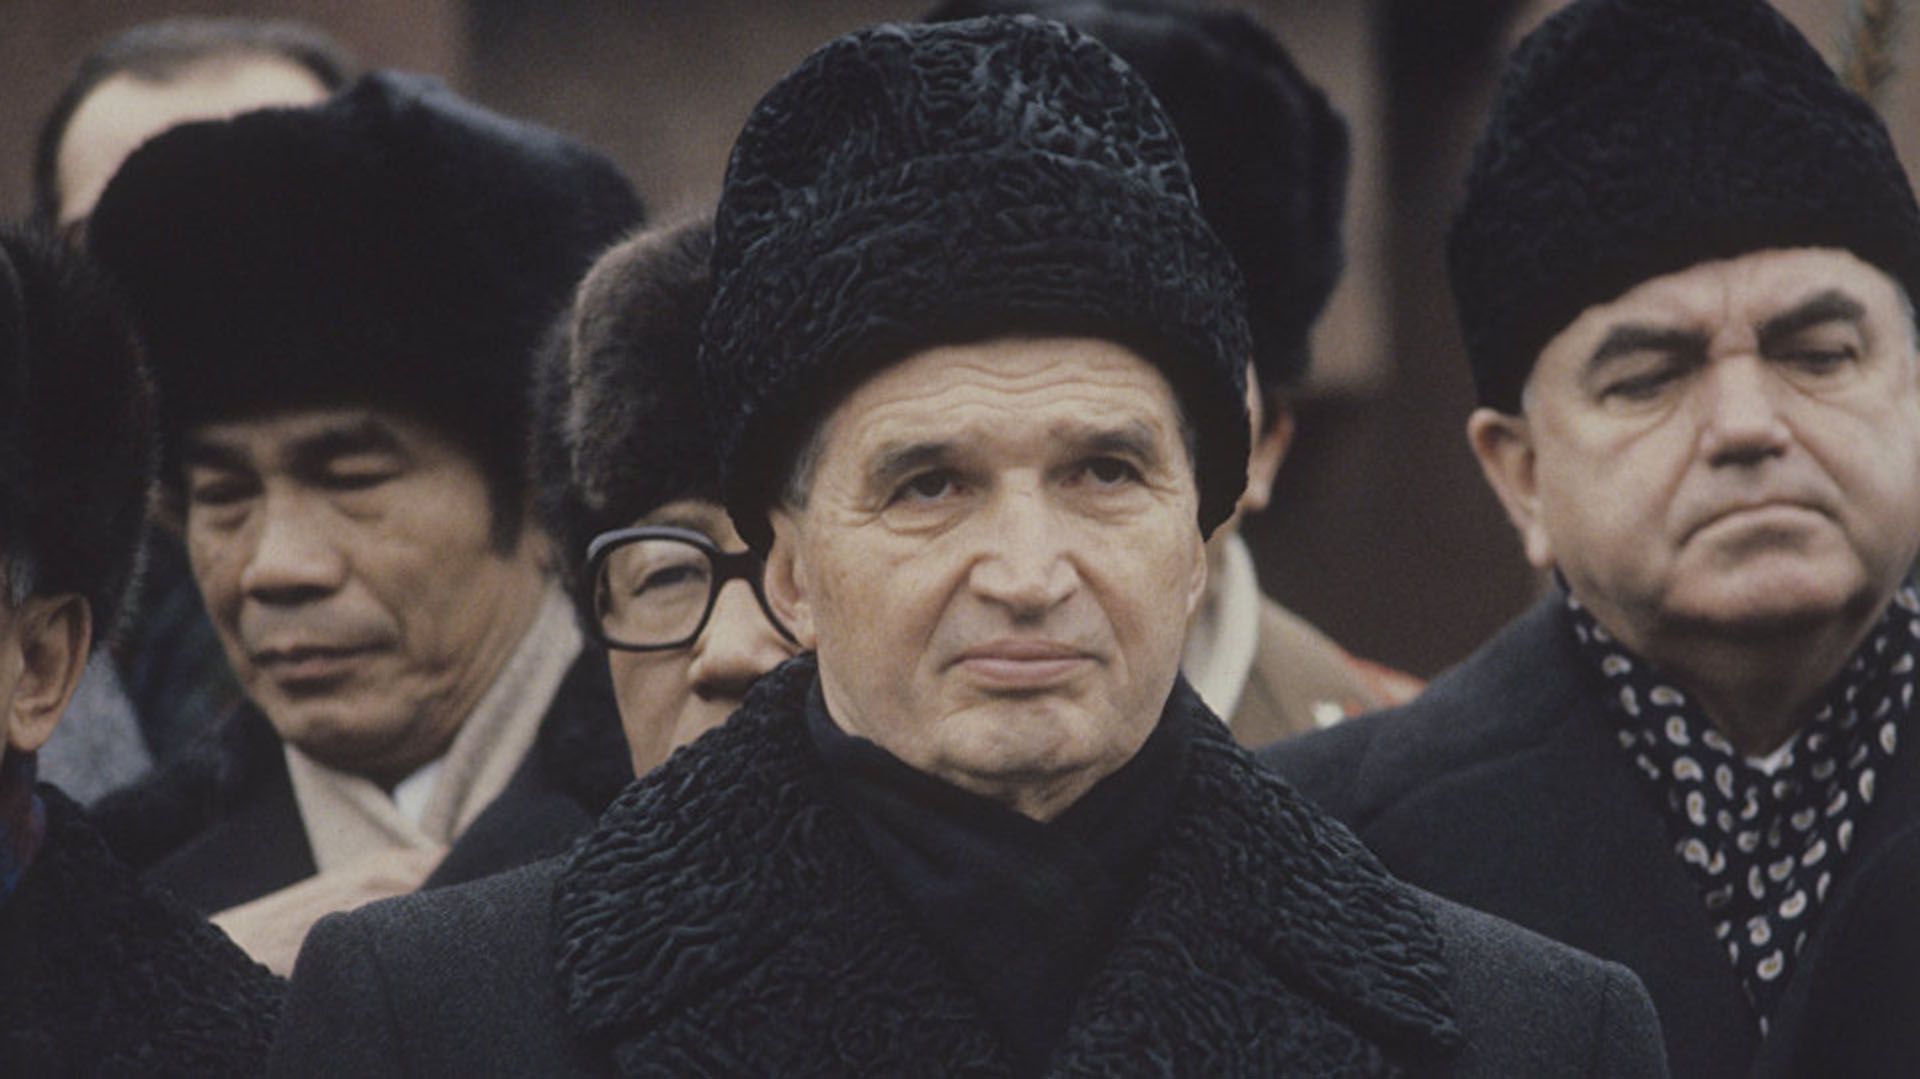 El dictador Nicolás Ceausescu mantuvo un liderazgo personalista y nacionalista sobre Rumania, dentro de la esfera de influencia soviética pero al mismo tiempo crítico de Moscú